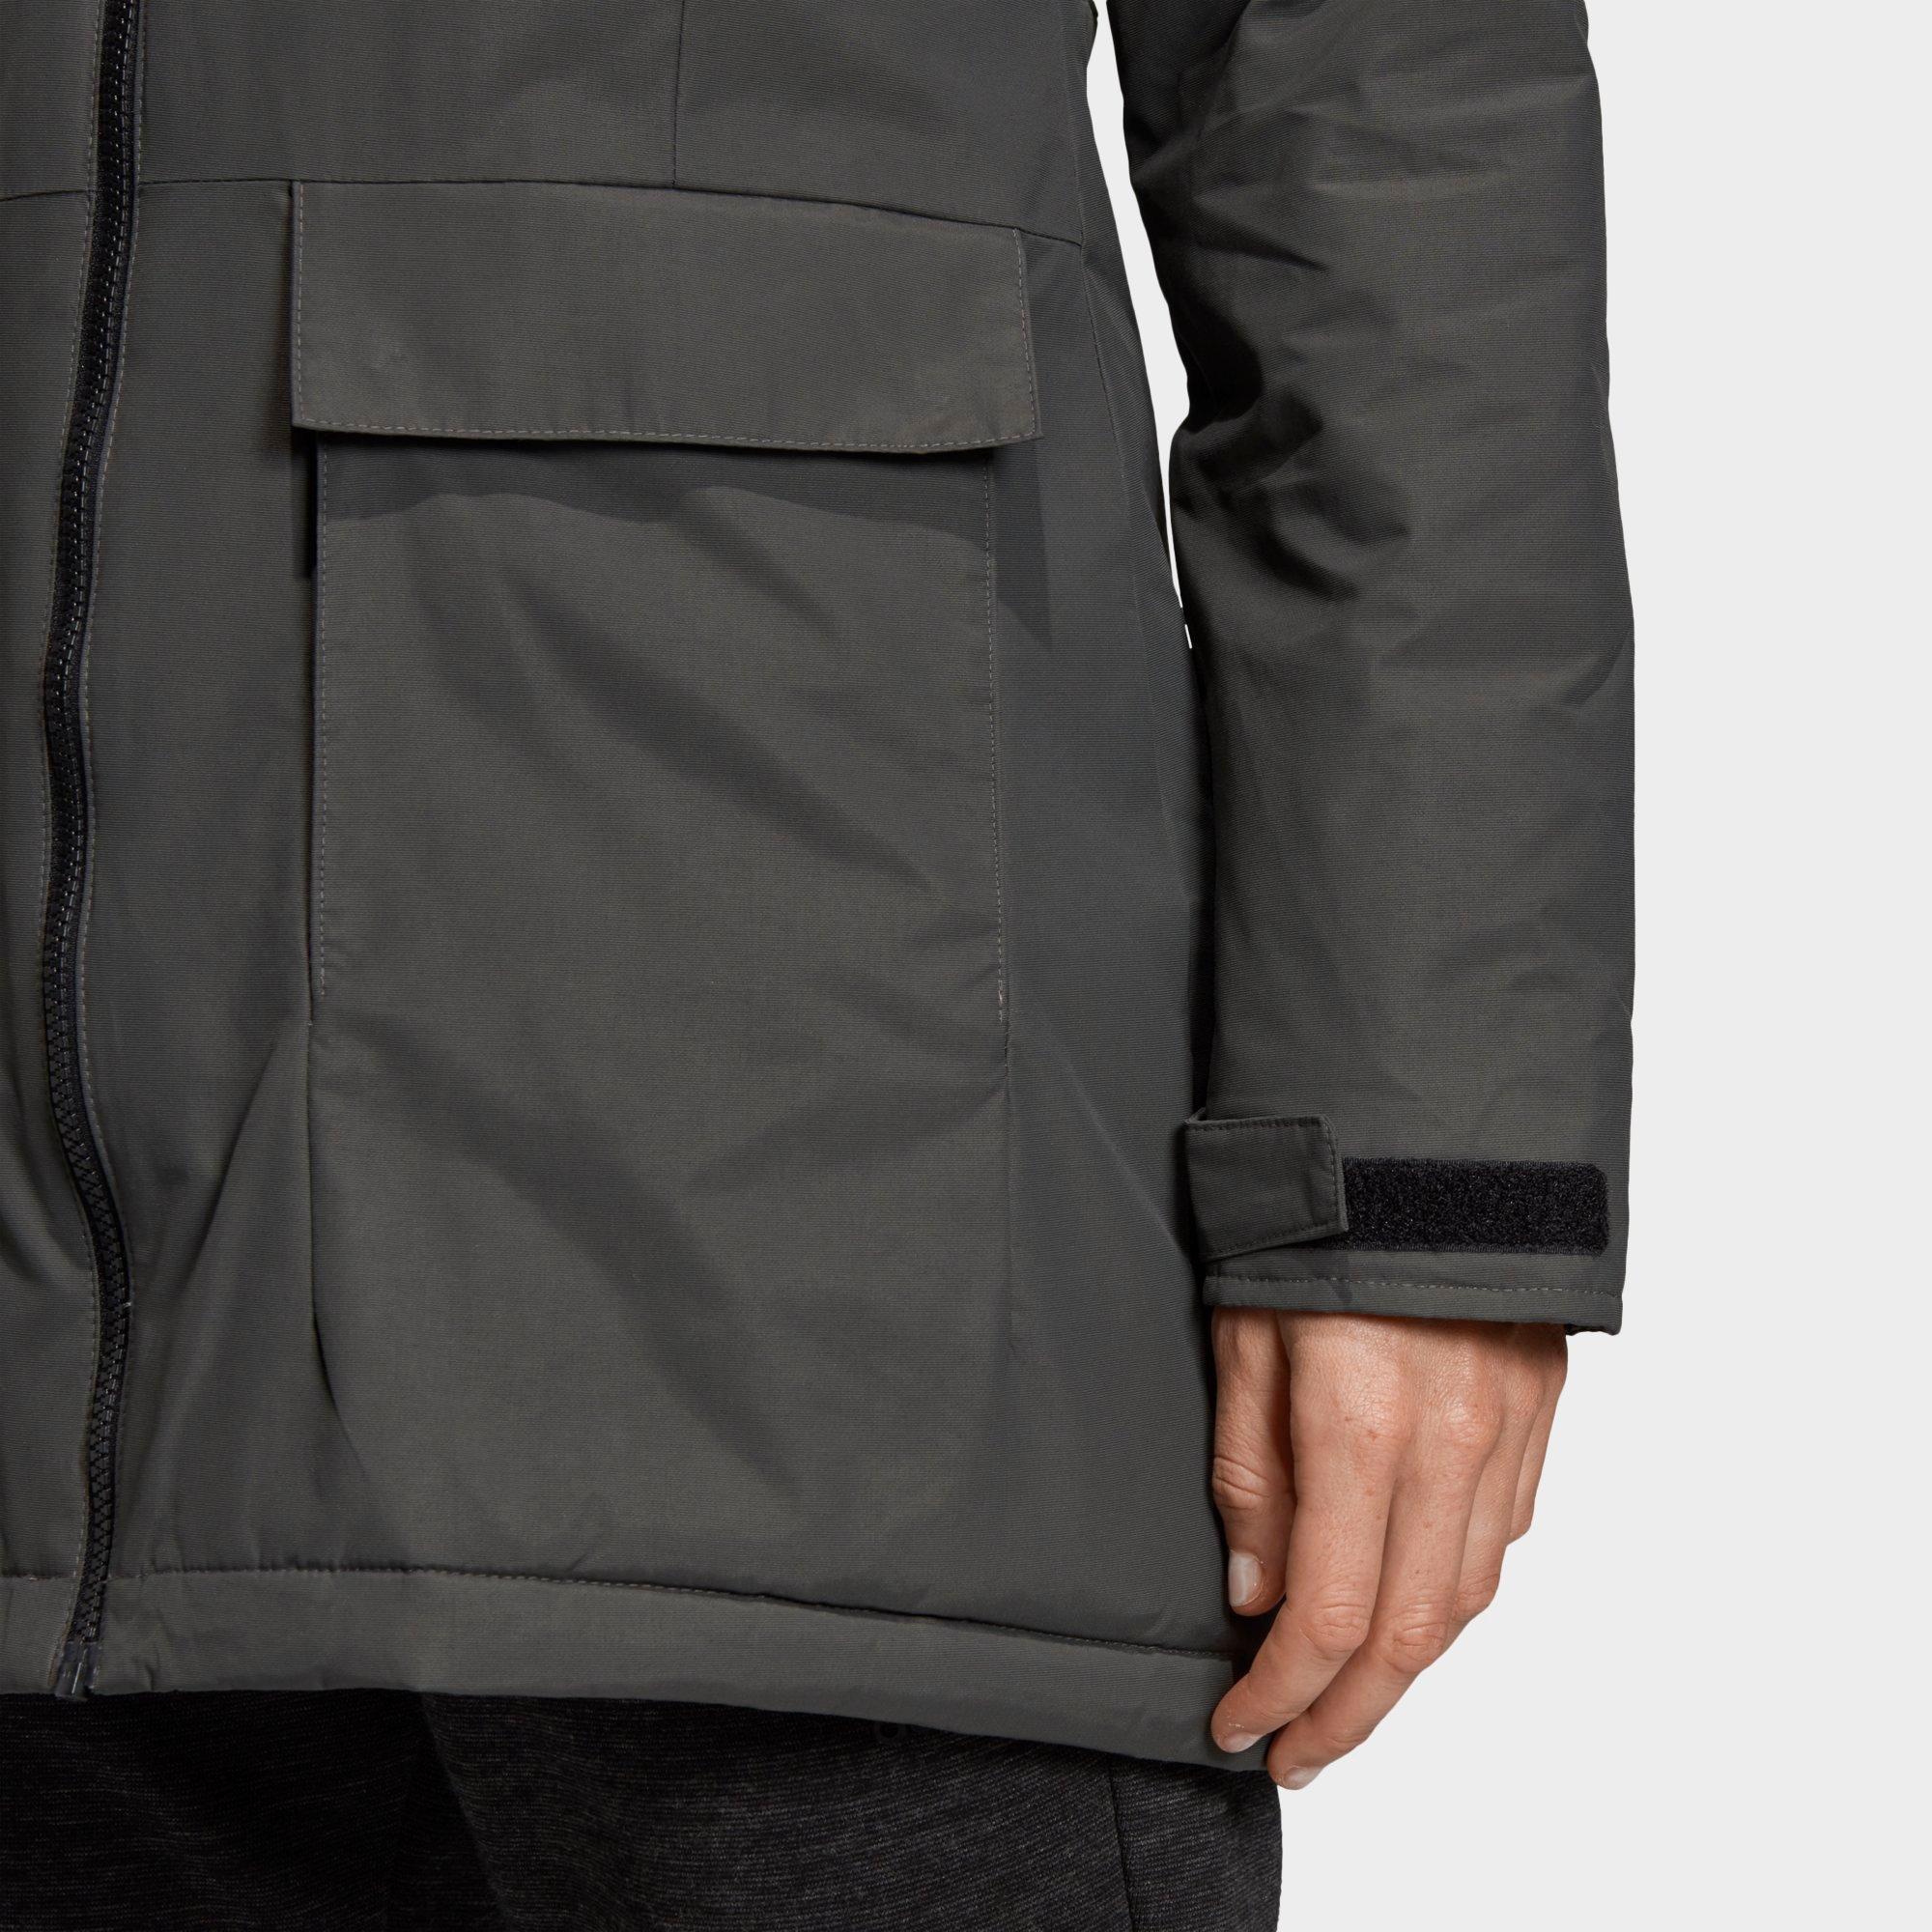 adidas jacket with symbol on back